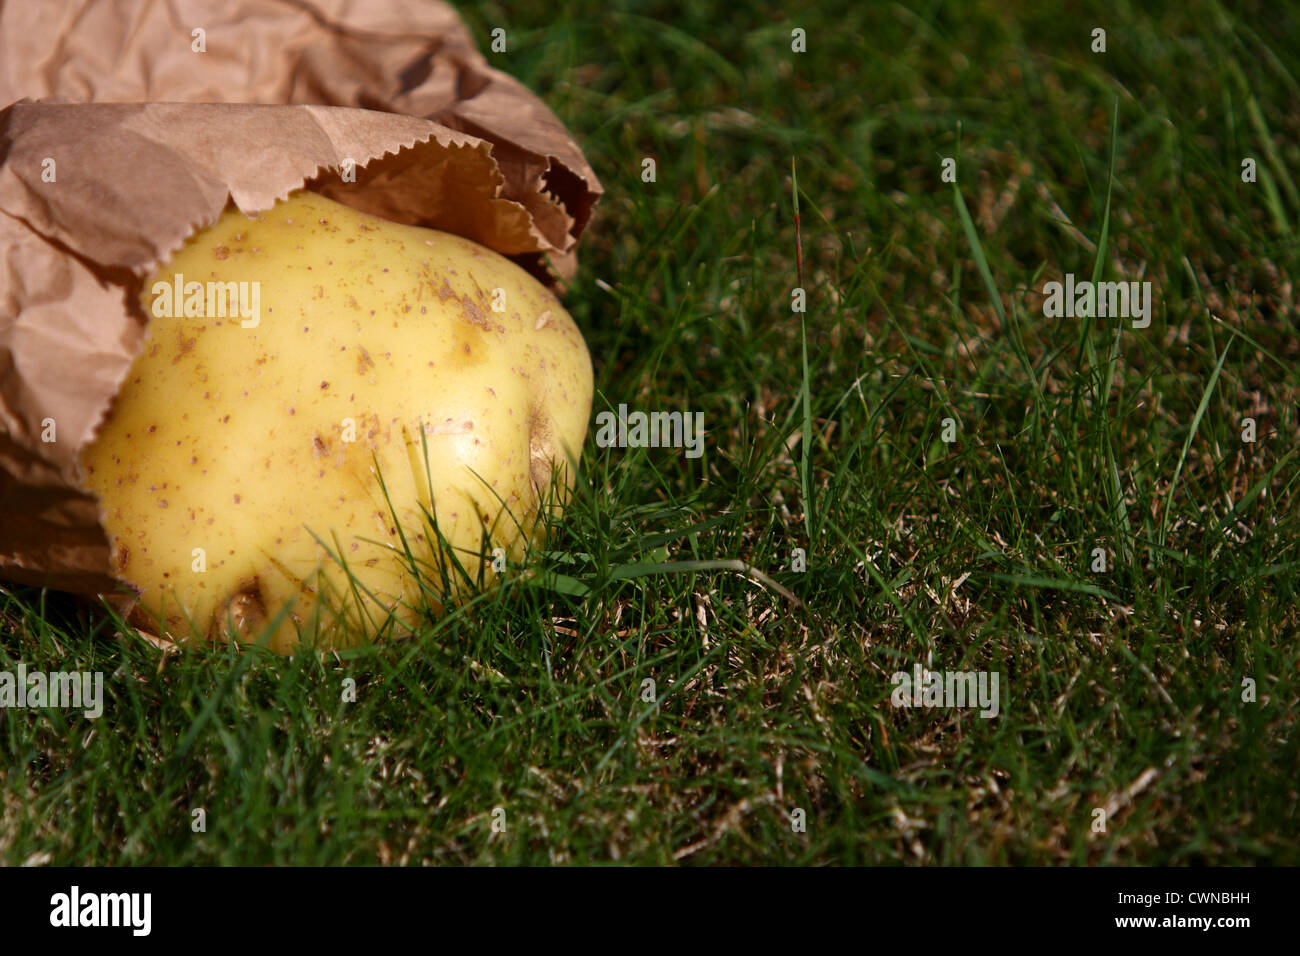 Una patata que sobresale de una bolsa de papel marrón sobre el césped Foto de stock